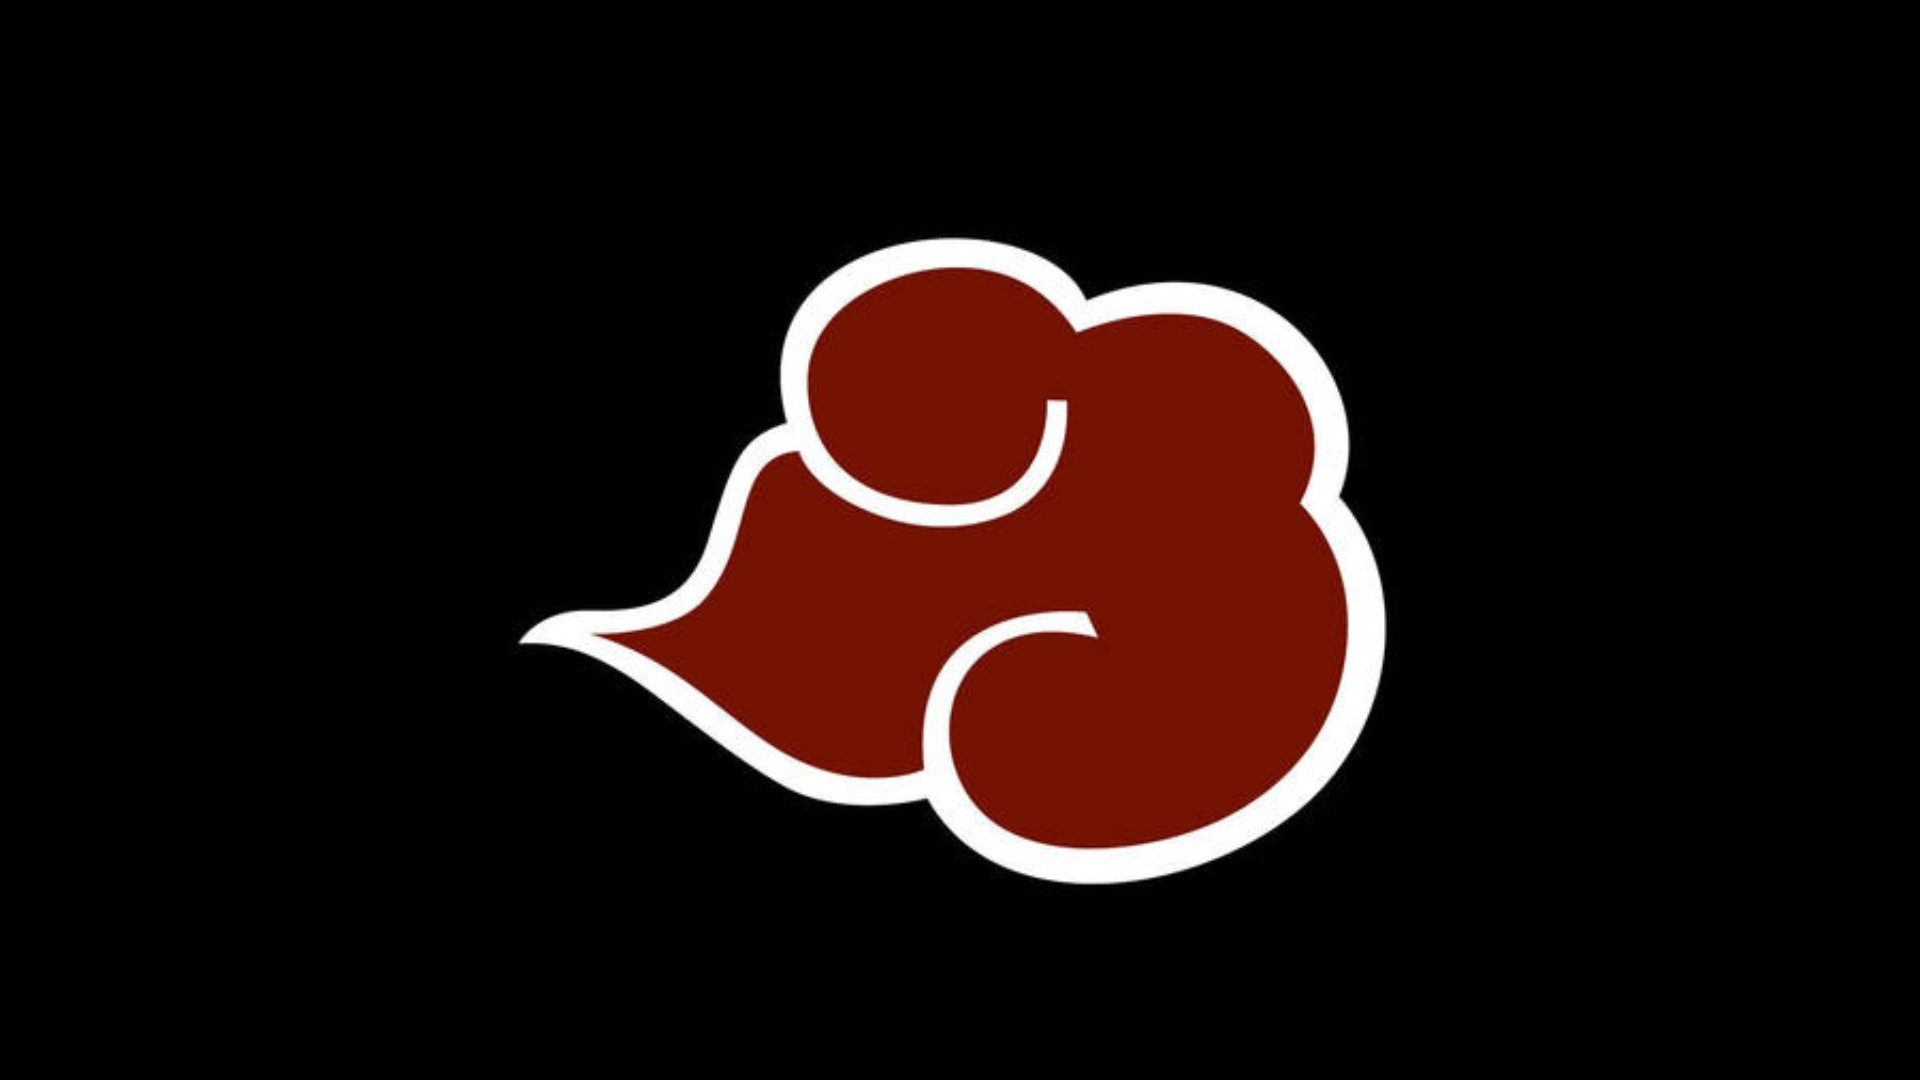 Naruto Logo Background Images